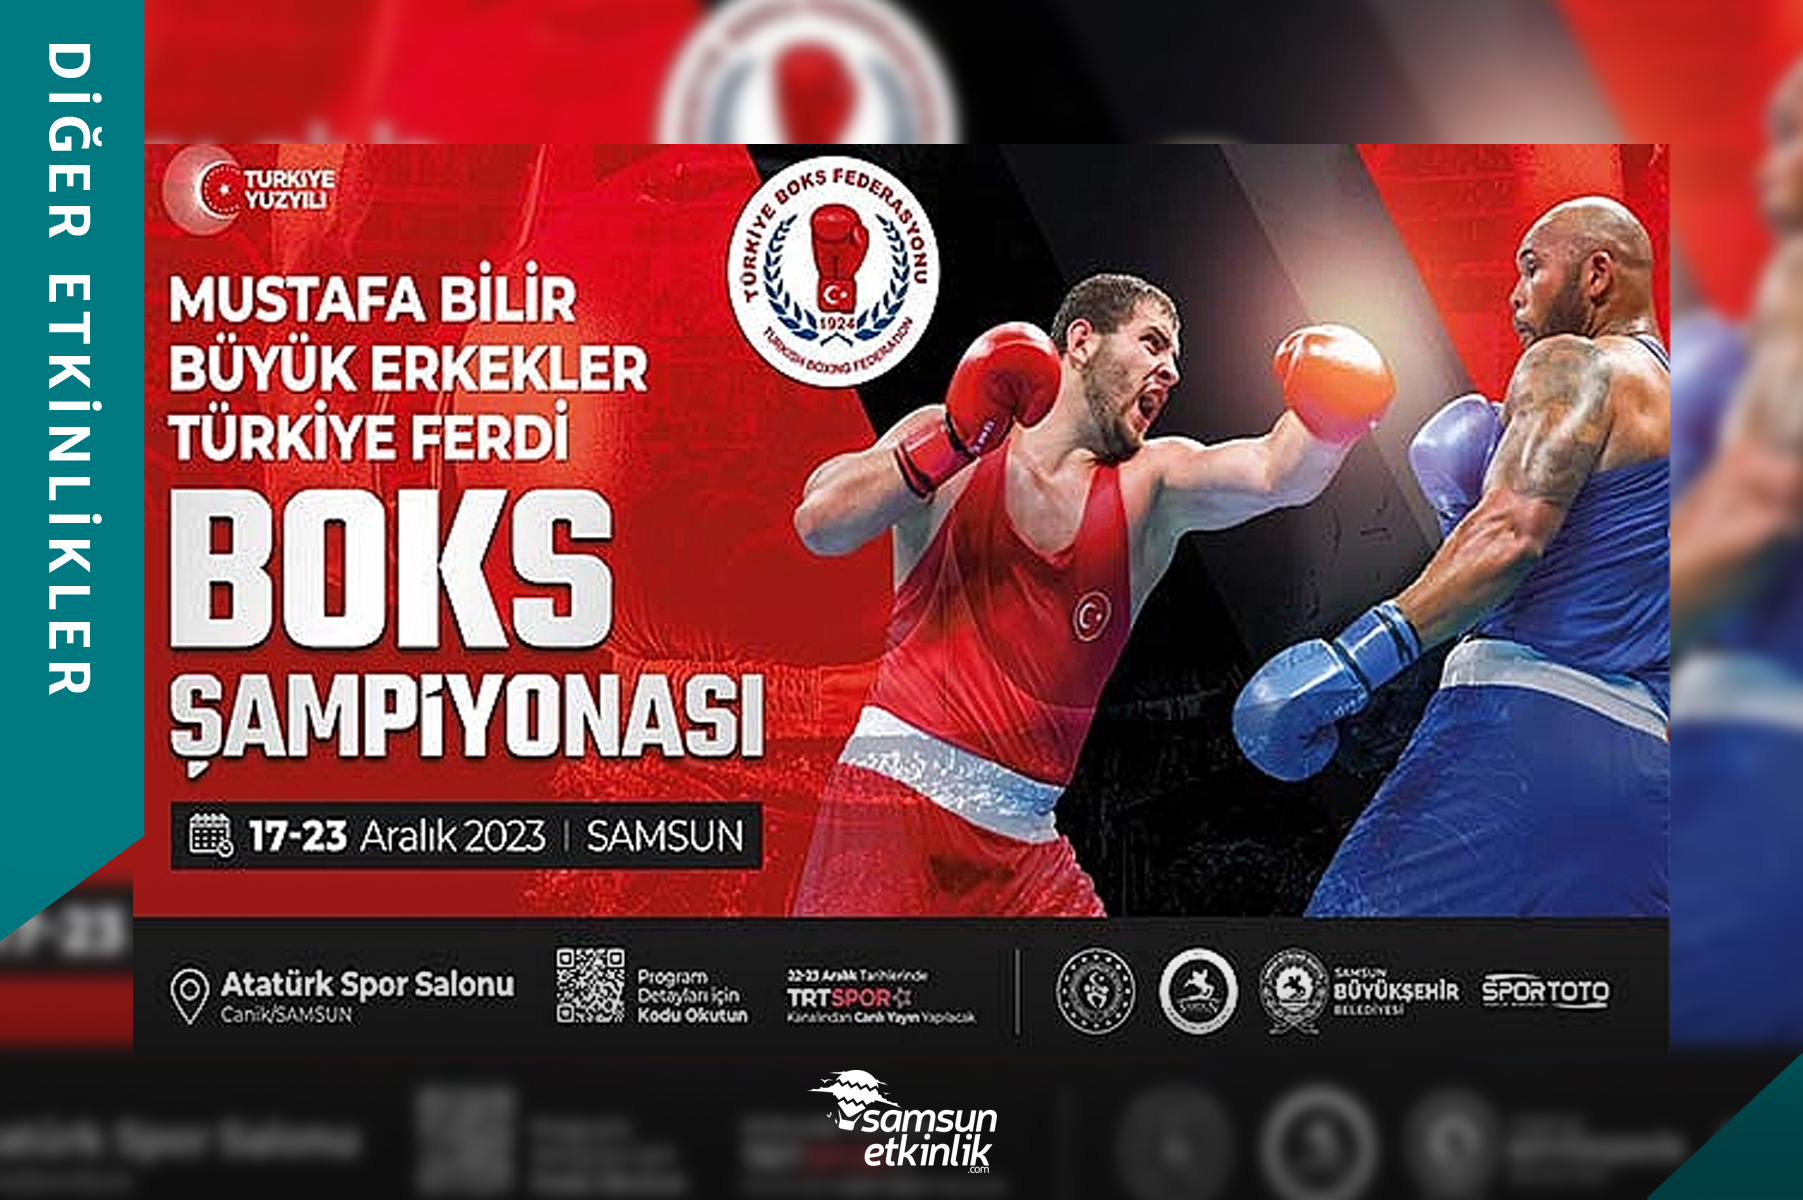 Mustafa Bilir Boks Şampiyonası Samsun'da Başlıyor!